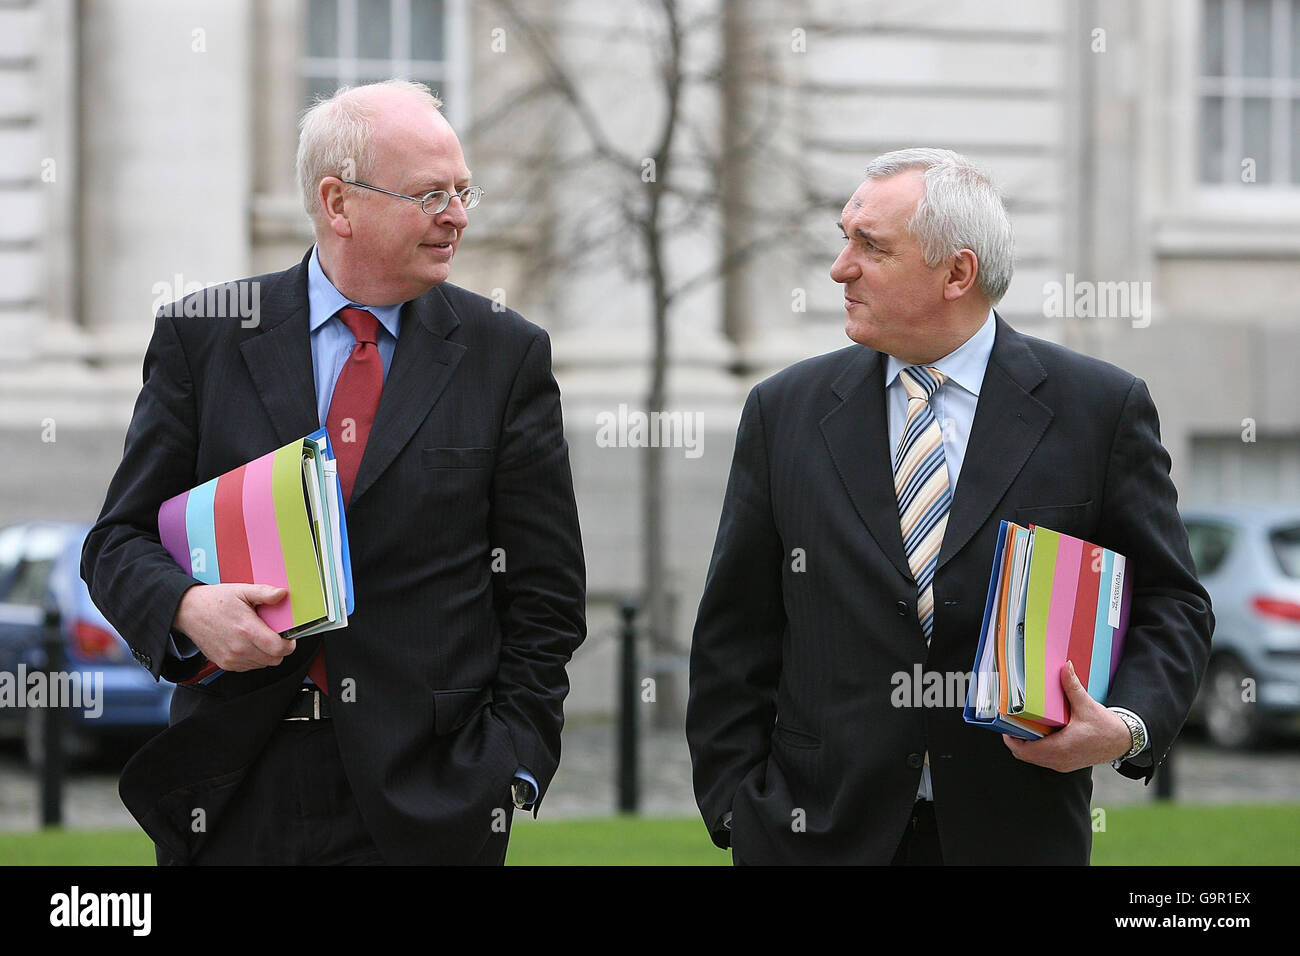 (De gauche à droite) Tainaiste Michael McDowell TD et Taoiseach Bertie Ahern TD à l'extérieur des bâtiments gouvernementaux, à Dublin, où le Plan d'action national pour l'inclusion sociale - bâtir une société inclusive, a été lancé aujourd'hui. Banque D'Images